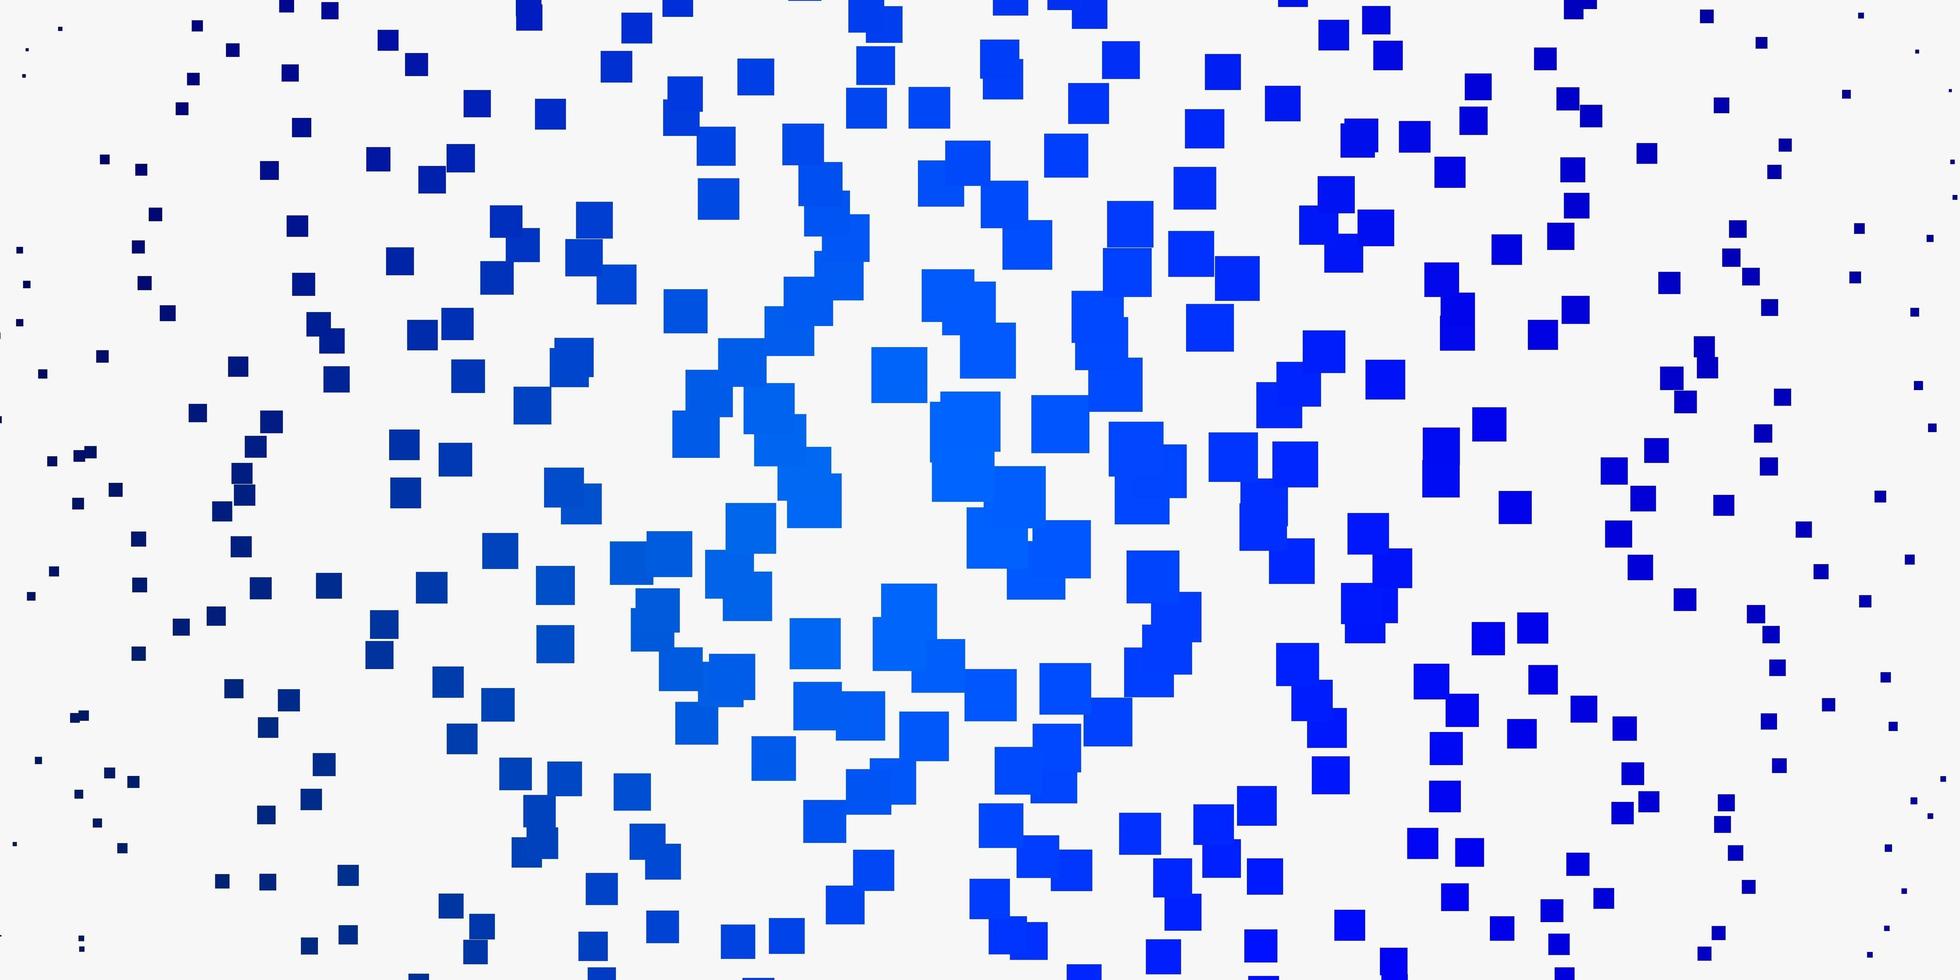 layout de vetor azul claro com linhas, retângulos